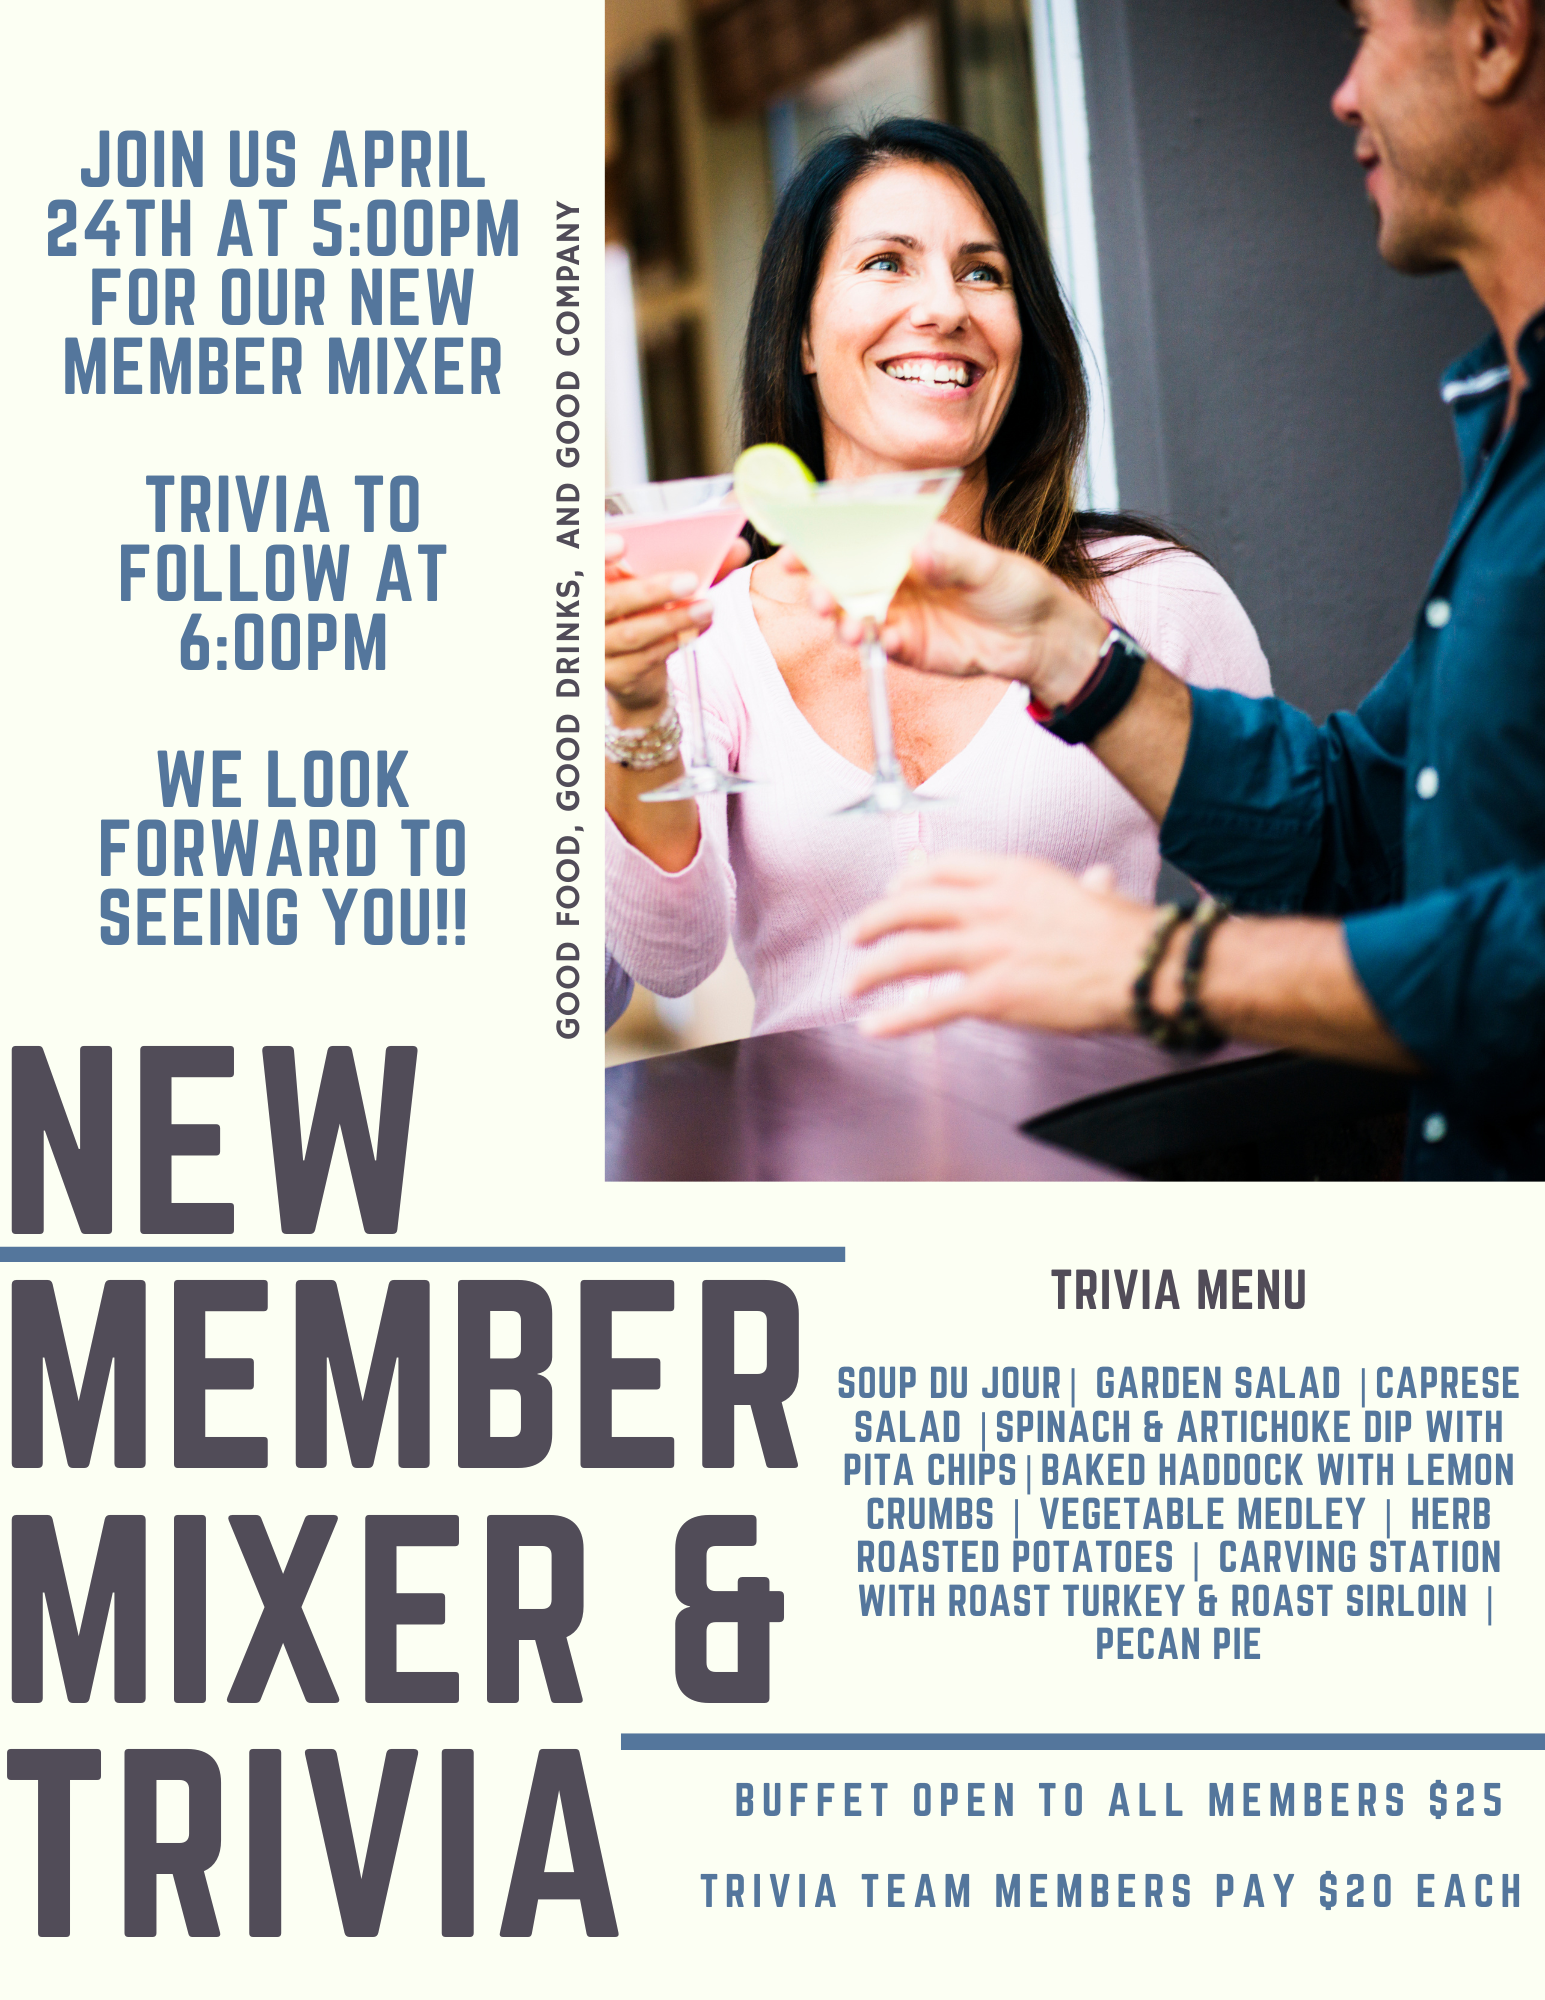 New Member Mixer & Trivia